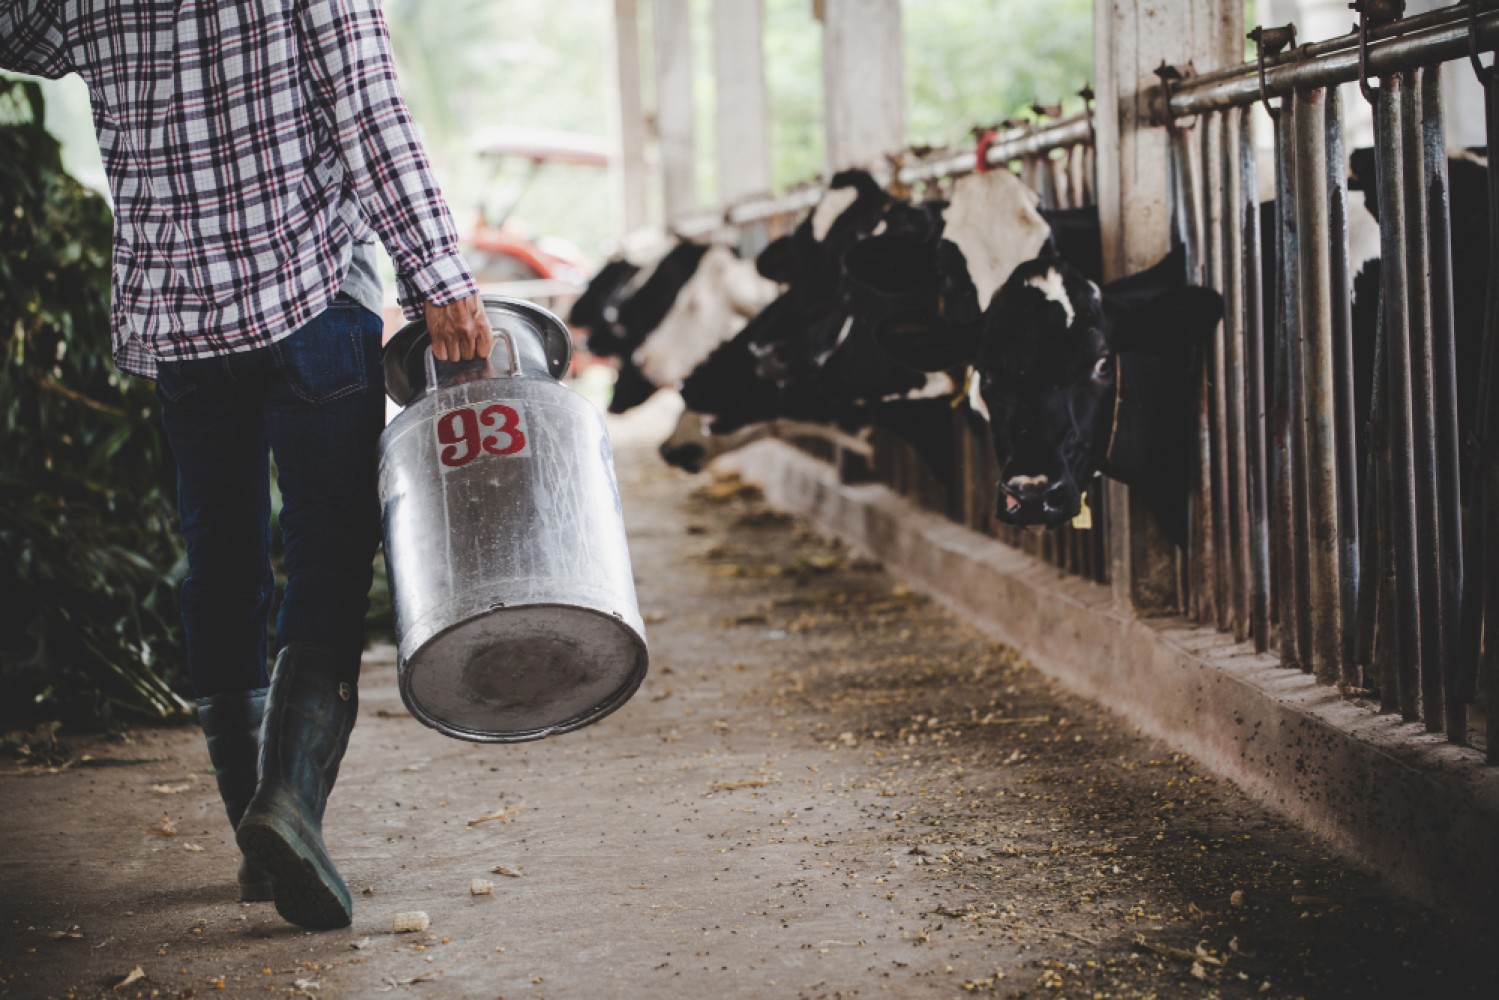 Оптимизация процесса раздоя коров является важным шагом в молочном производстве. Этот процесс включает подбор правильного рациона питания, обеспечение благоприятной среды и поддержка здоровья животных для максимальной продуктивности.